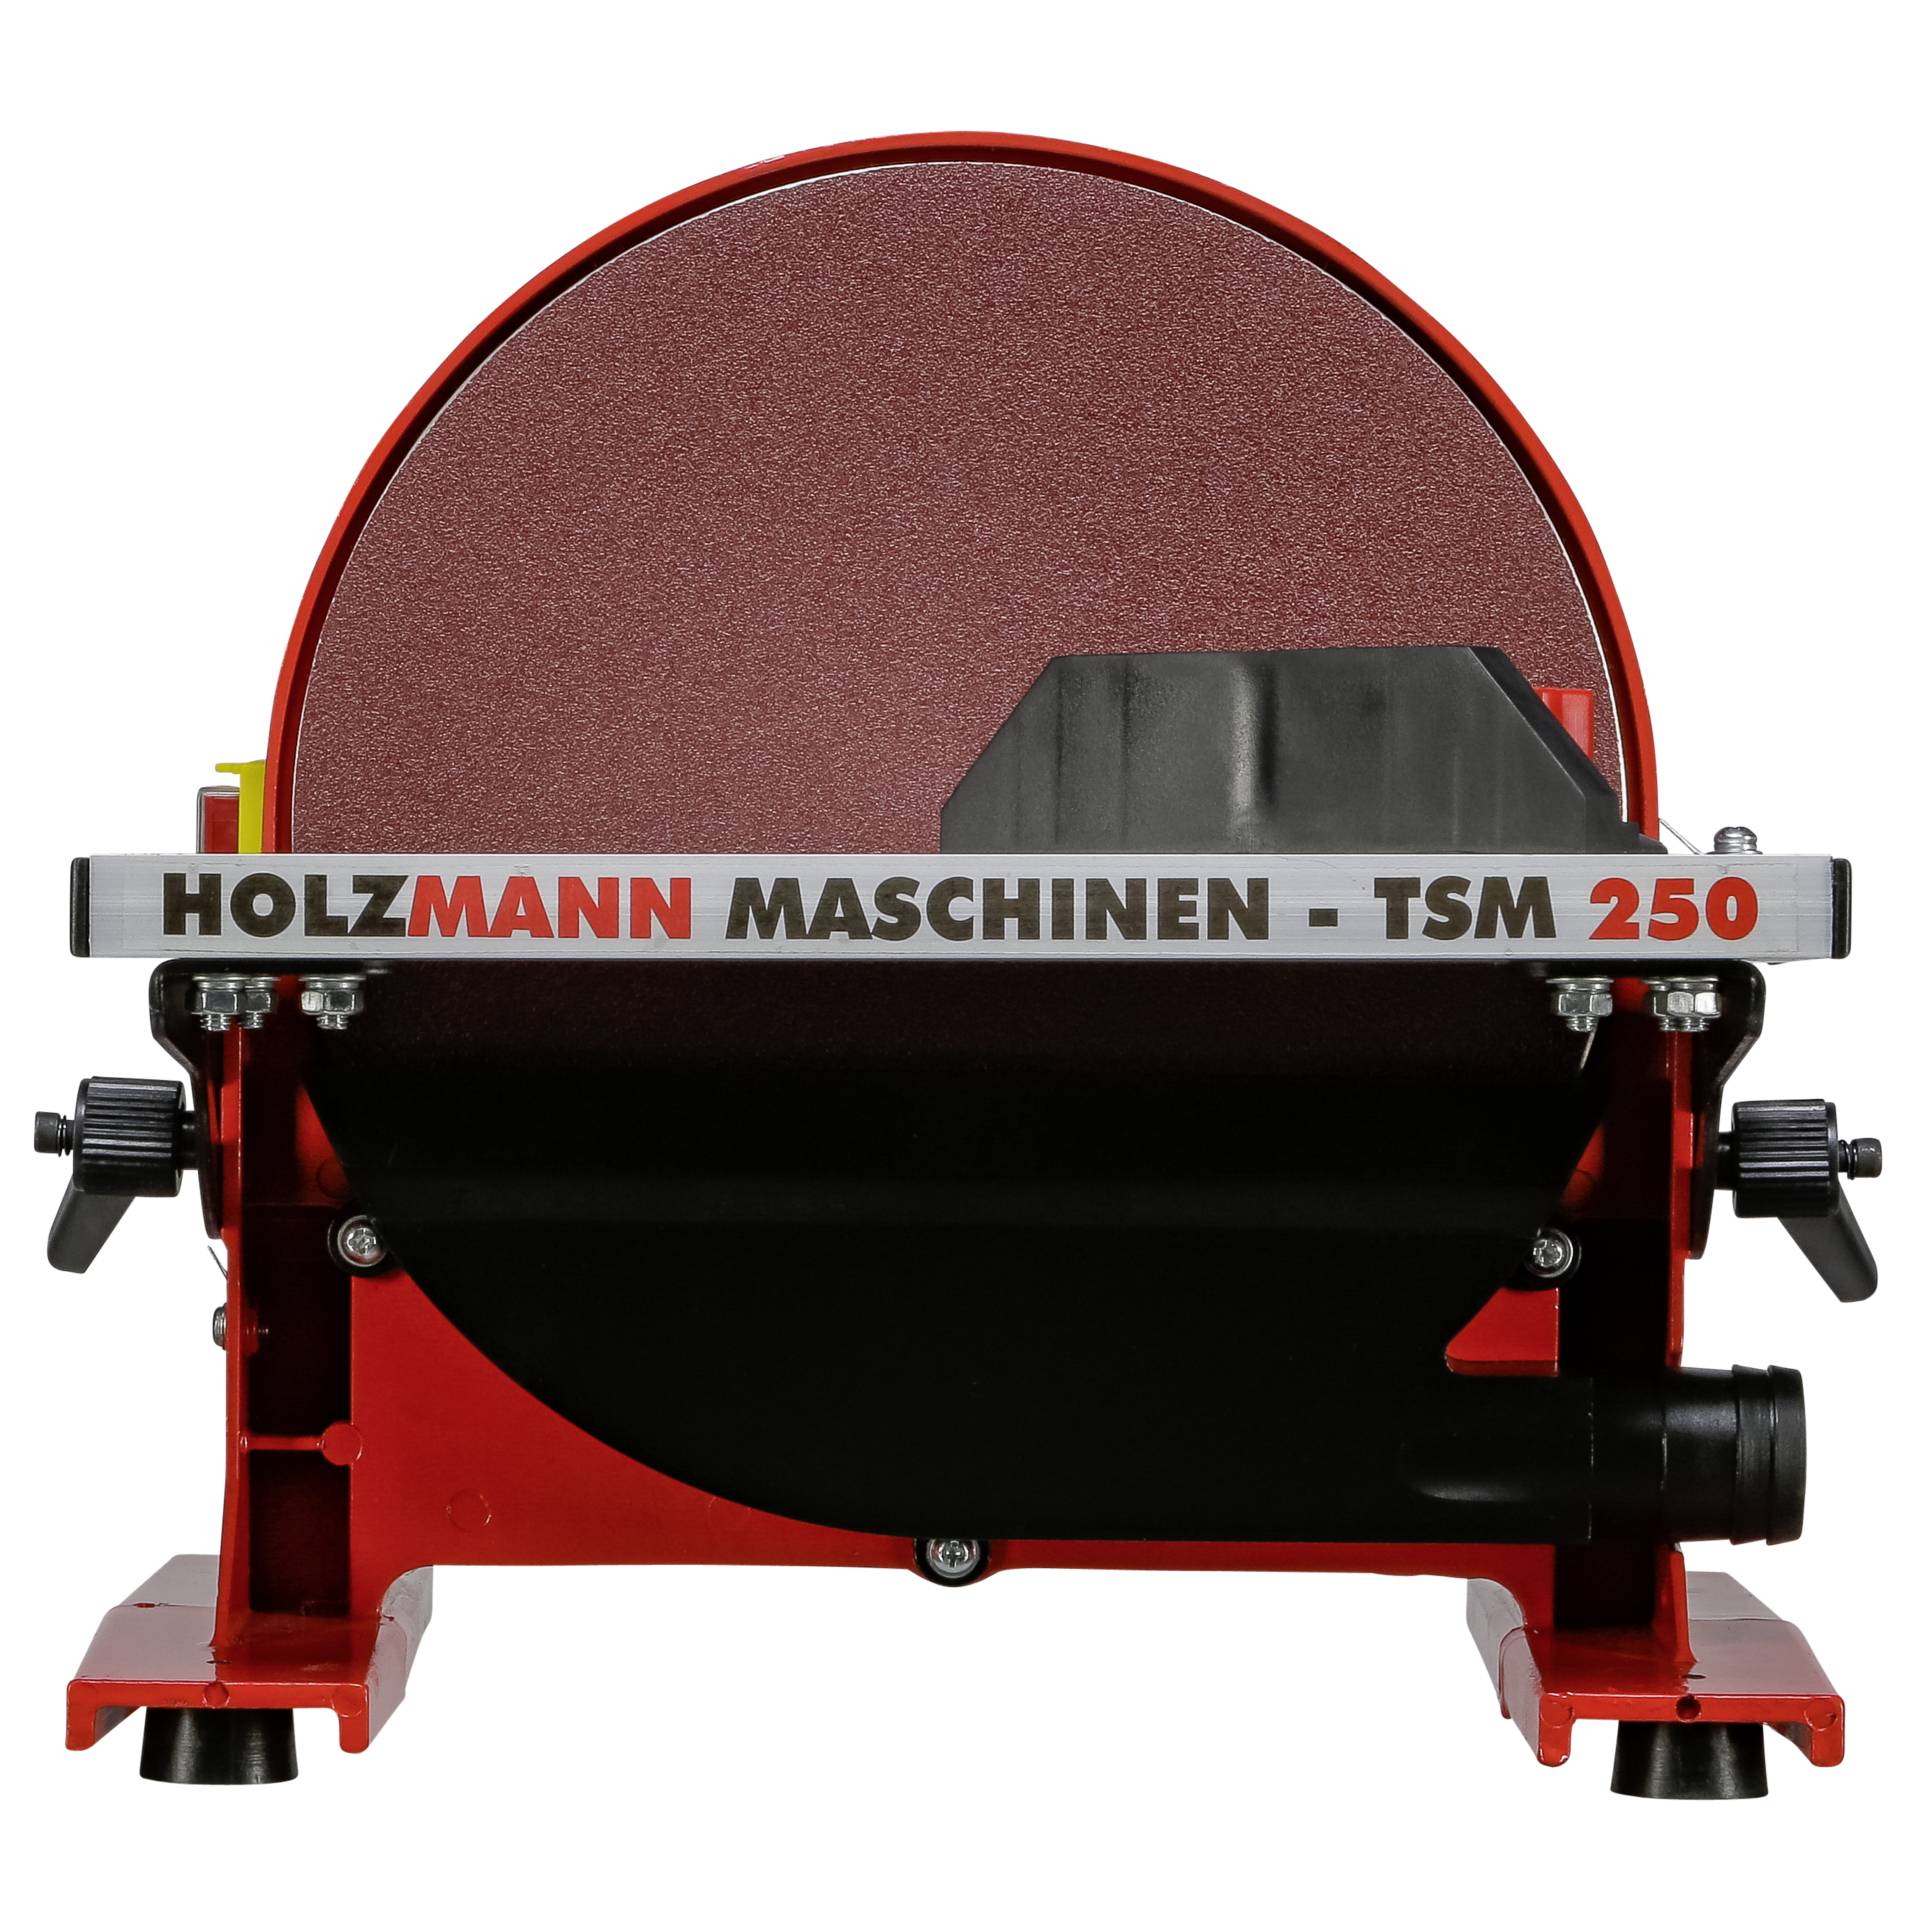 Holzmann Maschinen -Tellerschleifer 550 W 254 mm TSM250 TSM250_230V  (TSM250_230V) -Holzmann Maschinen Hardware/Electronic